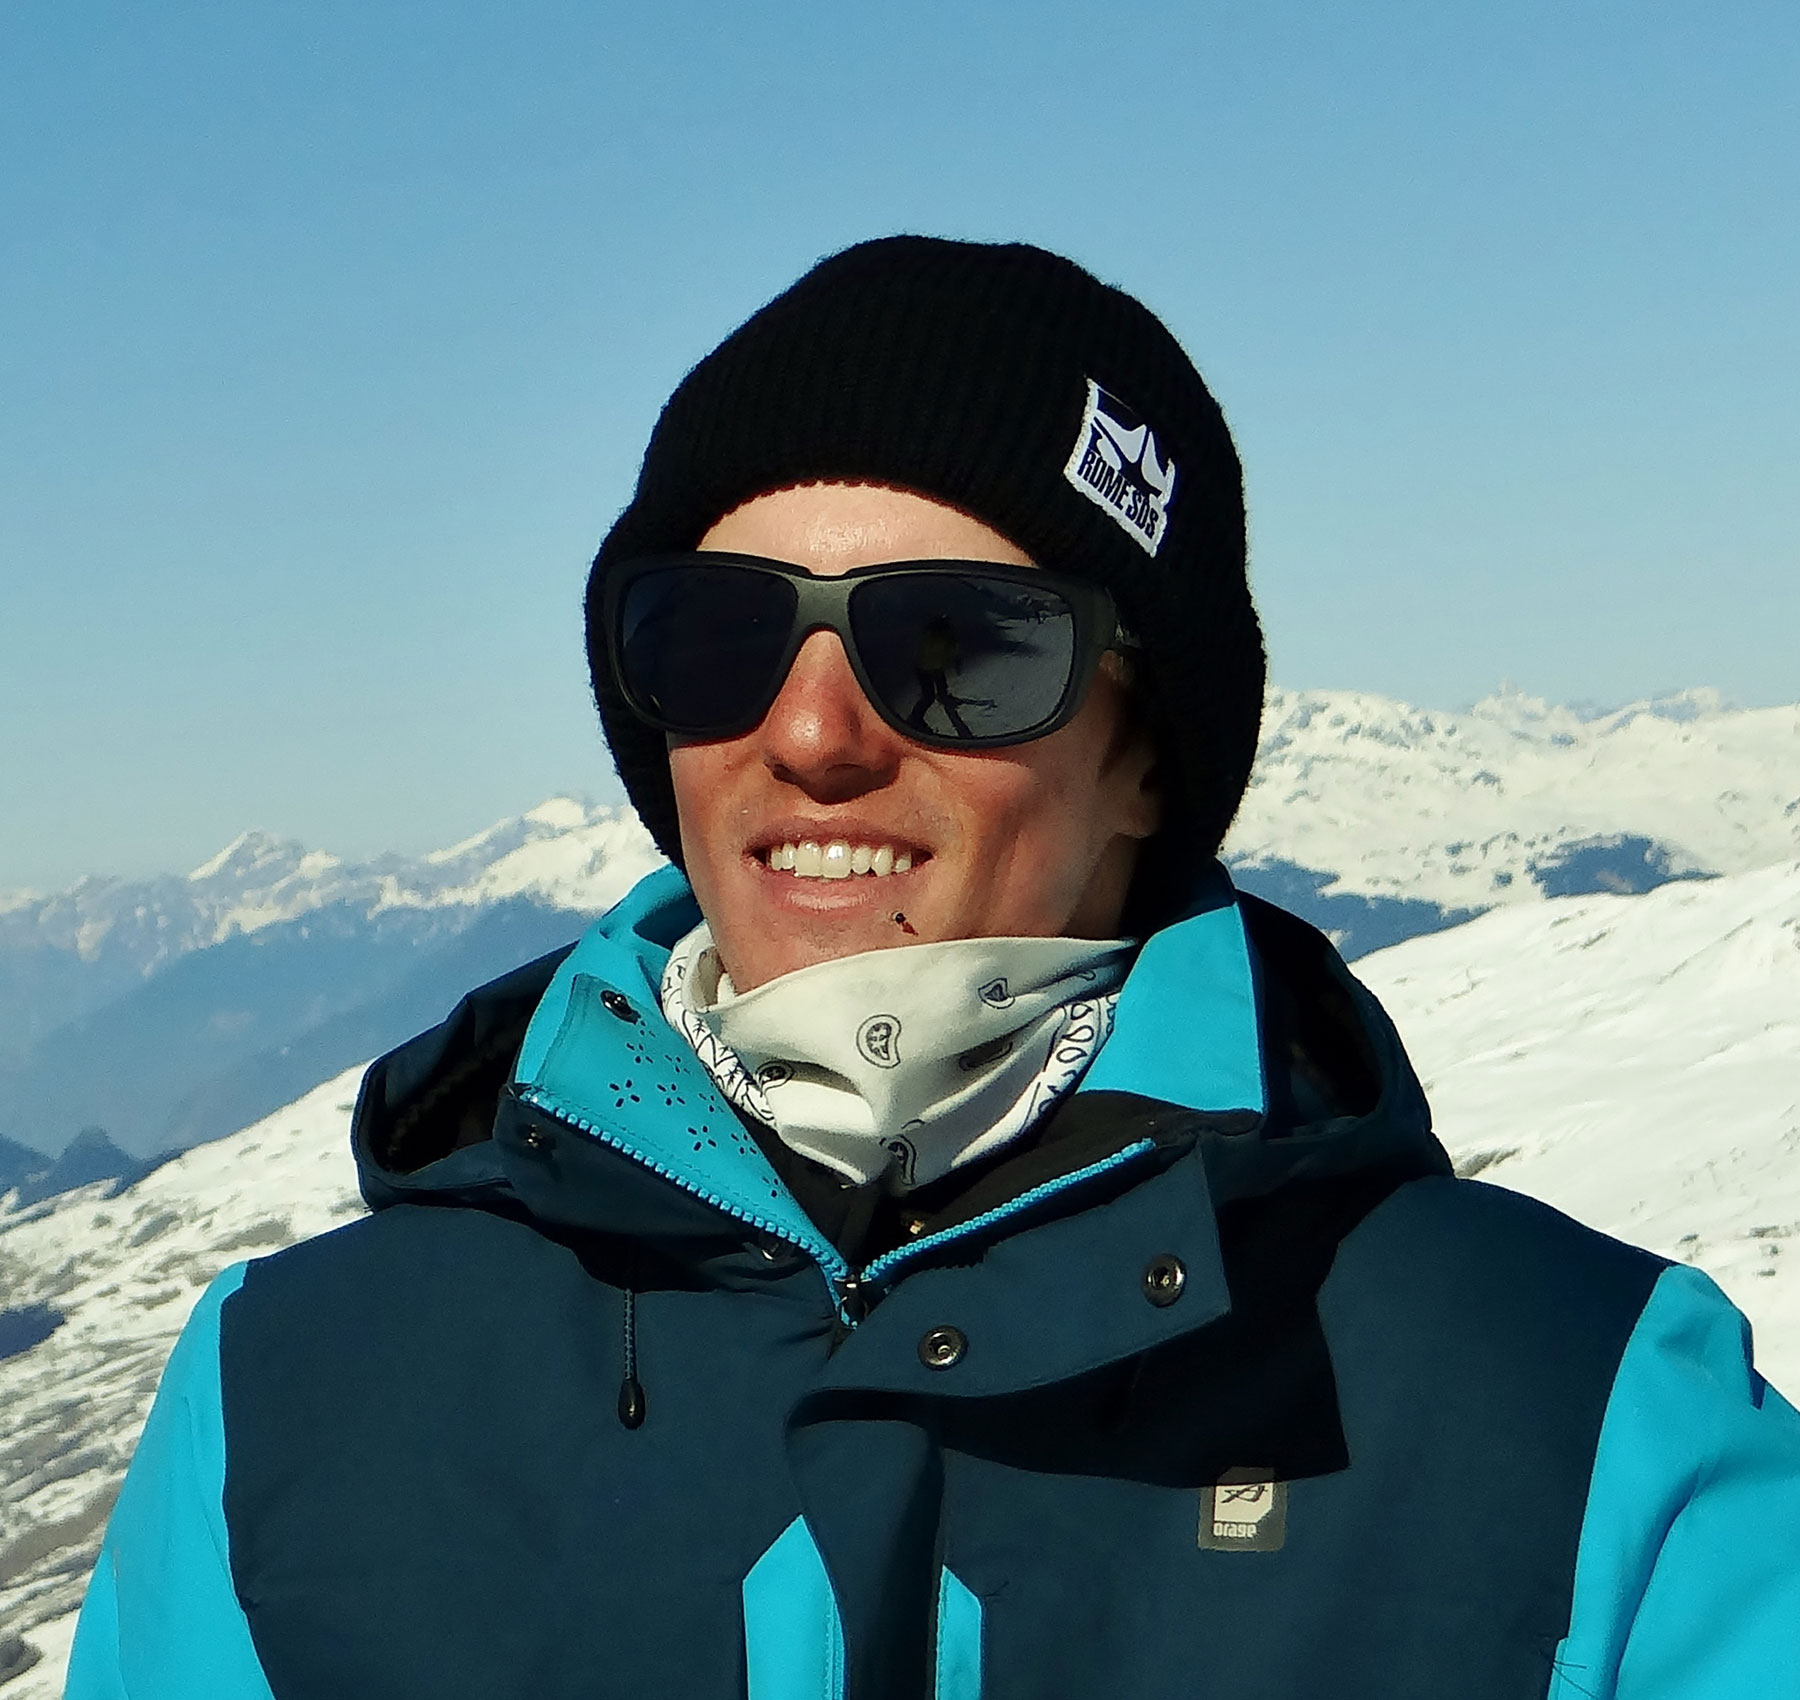 Jeremy-val-thorens-ski-instructor